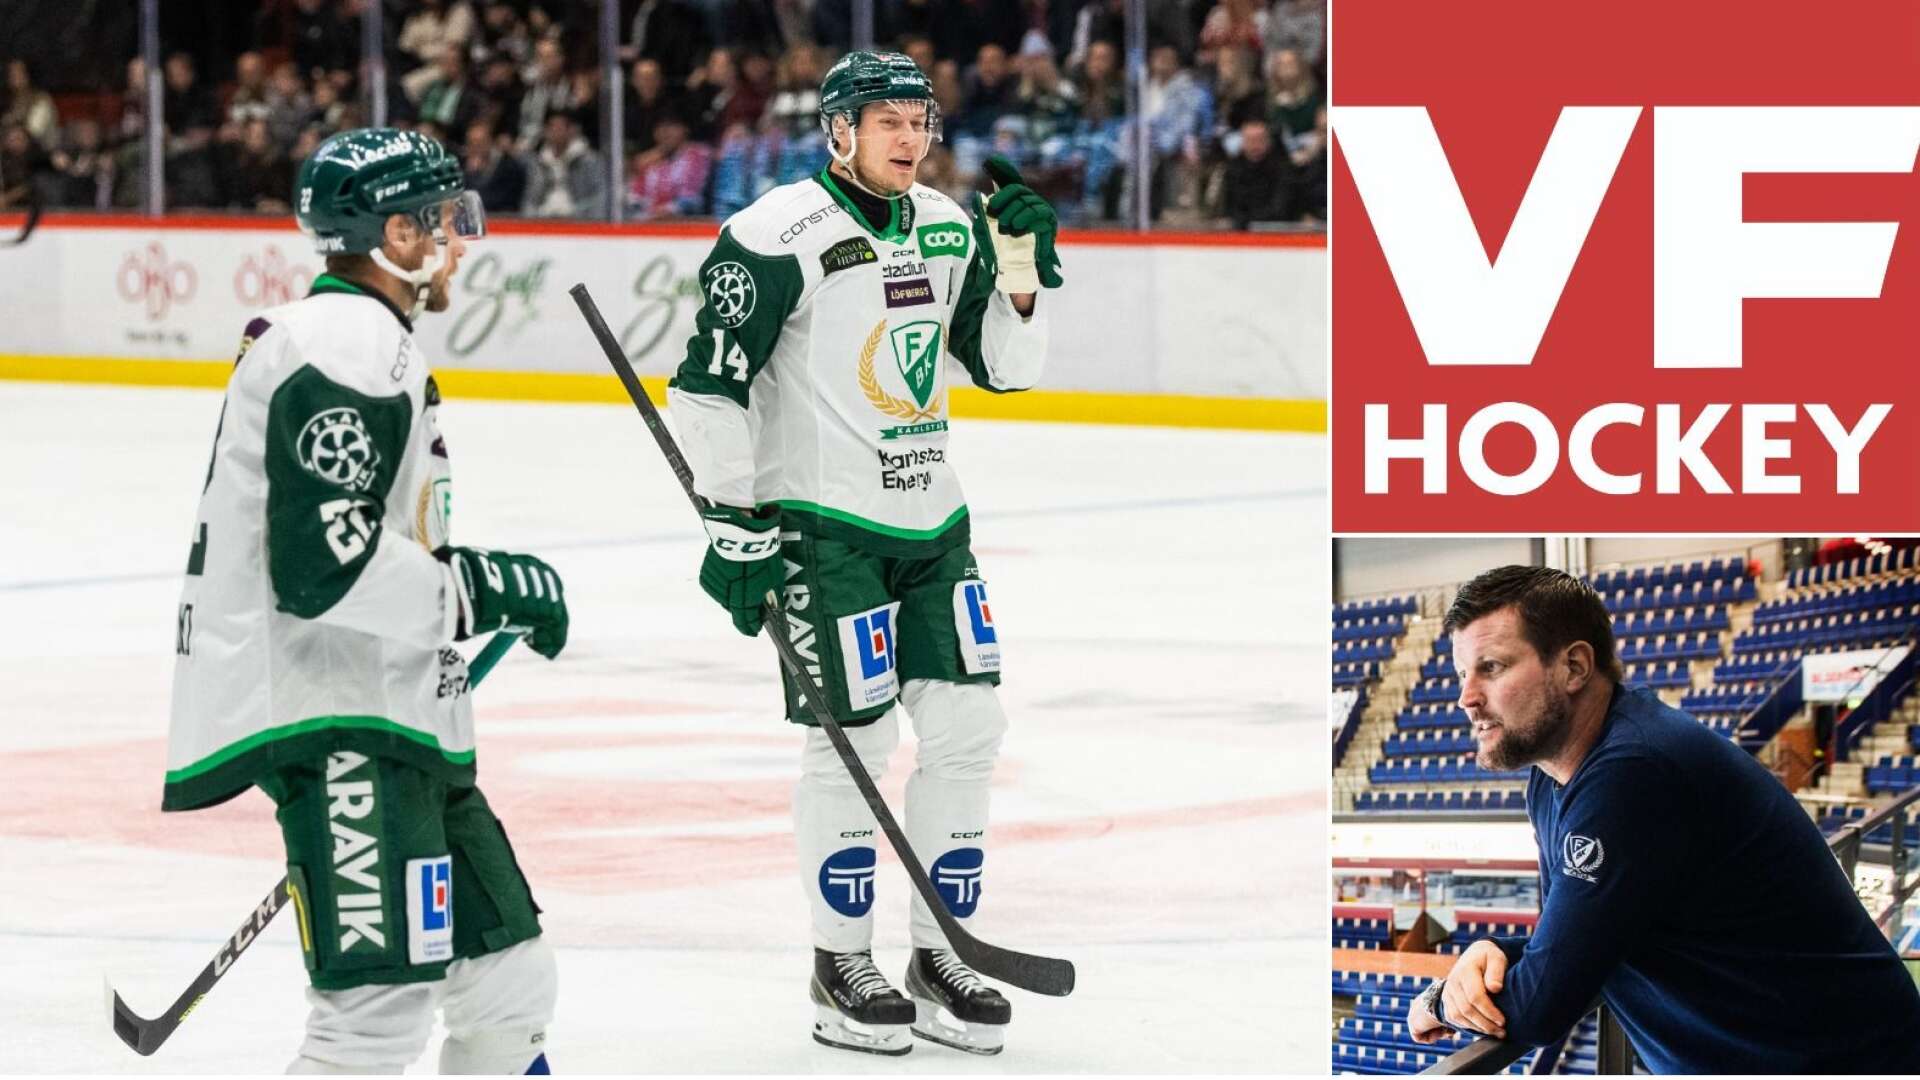 Lyssna både till Victor Ejdsell och Peter Jakobsson i nya avsnittet av VF Hockey.